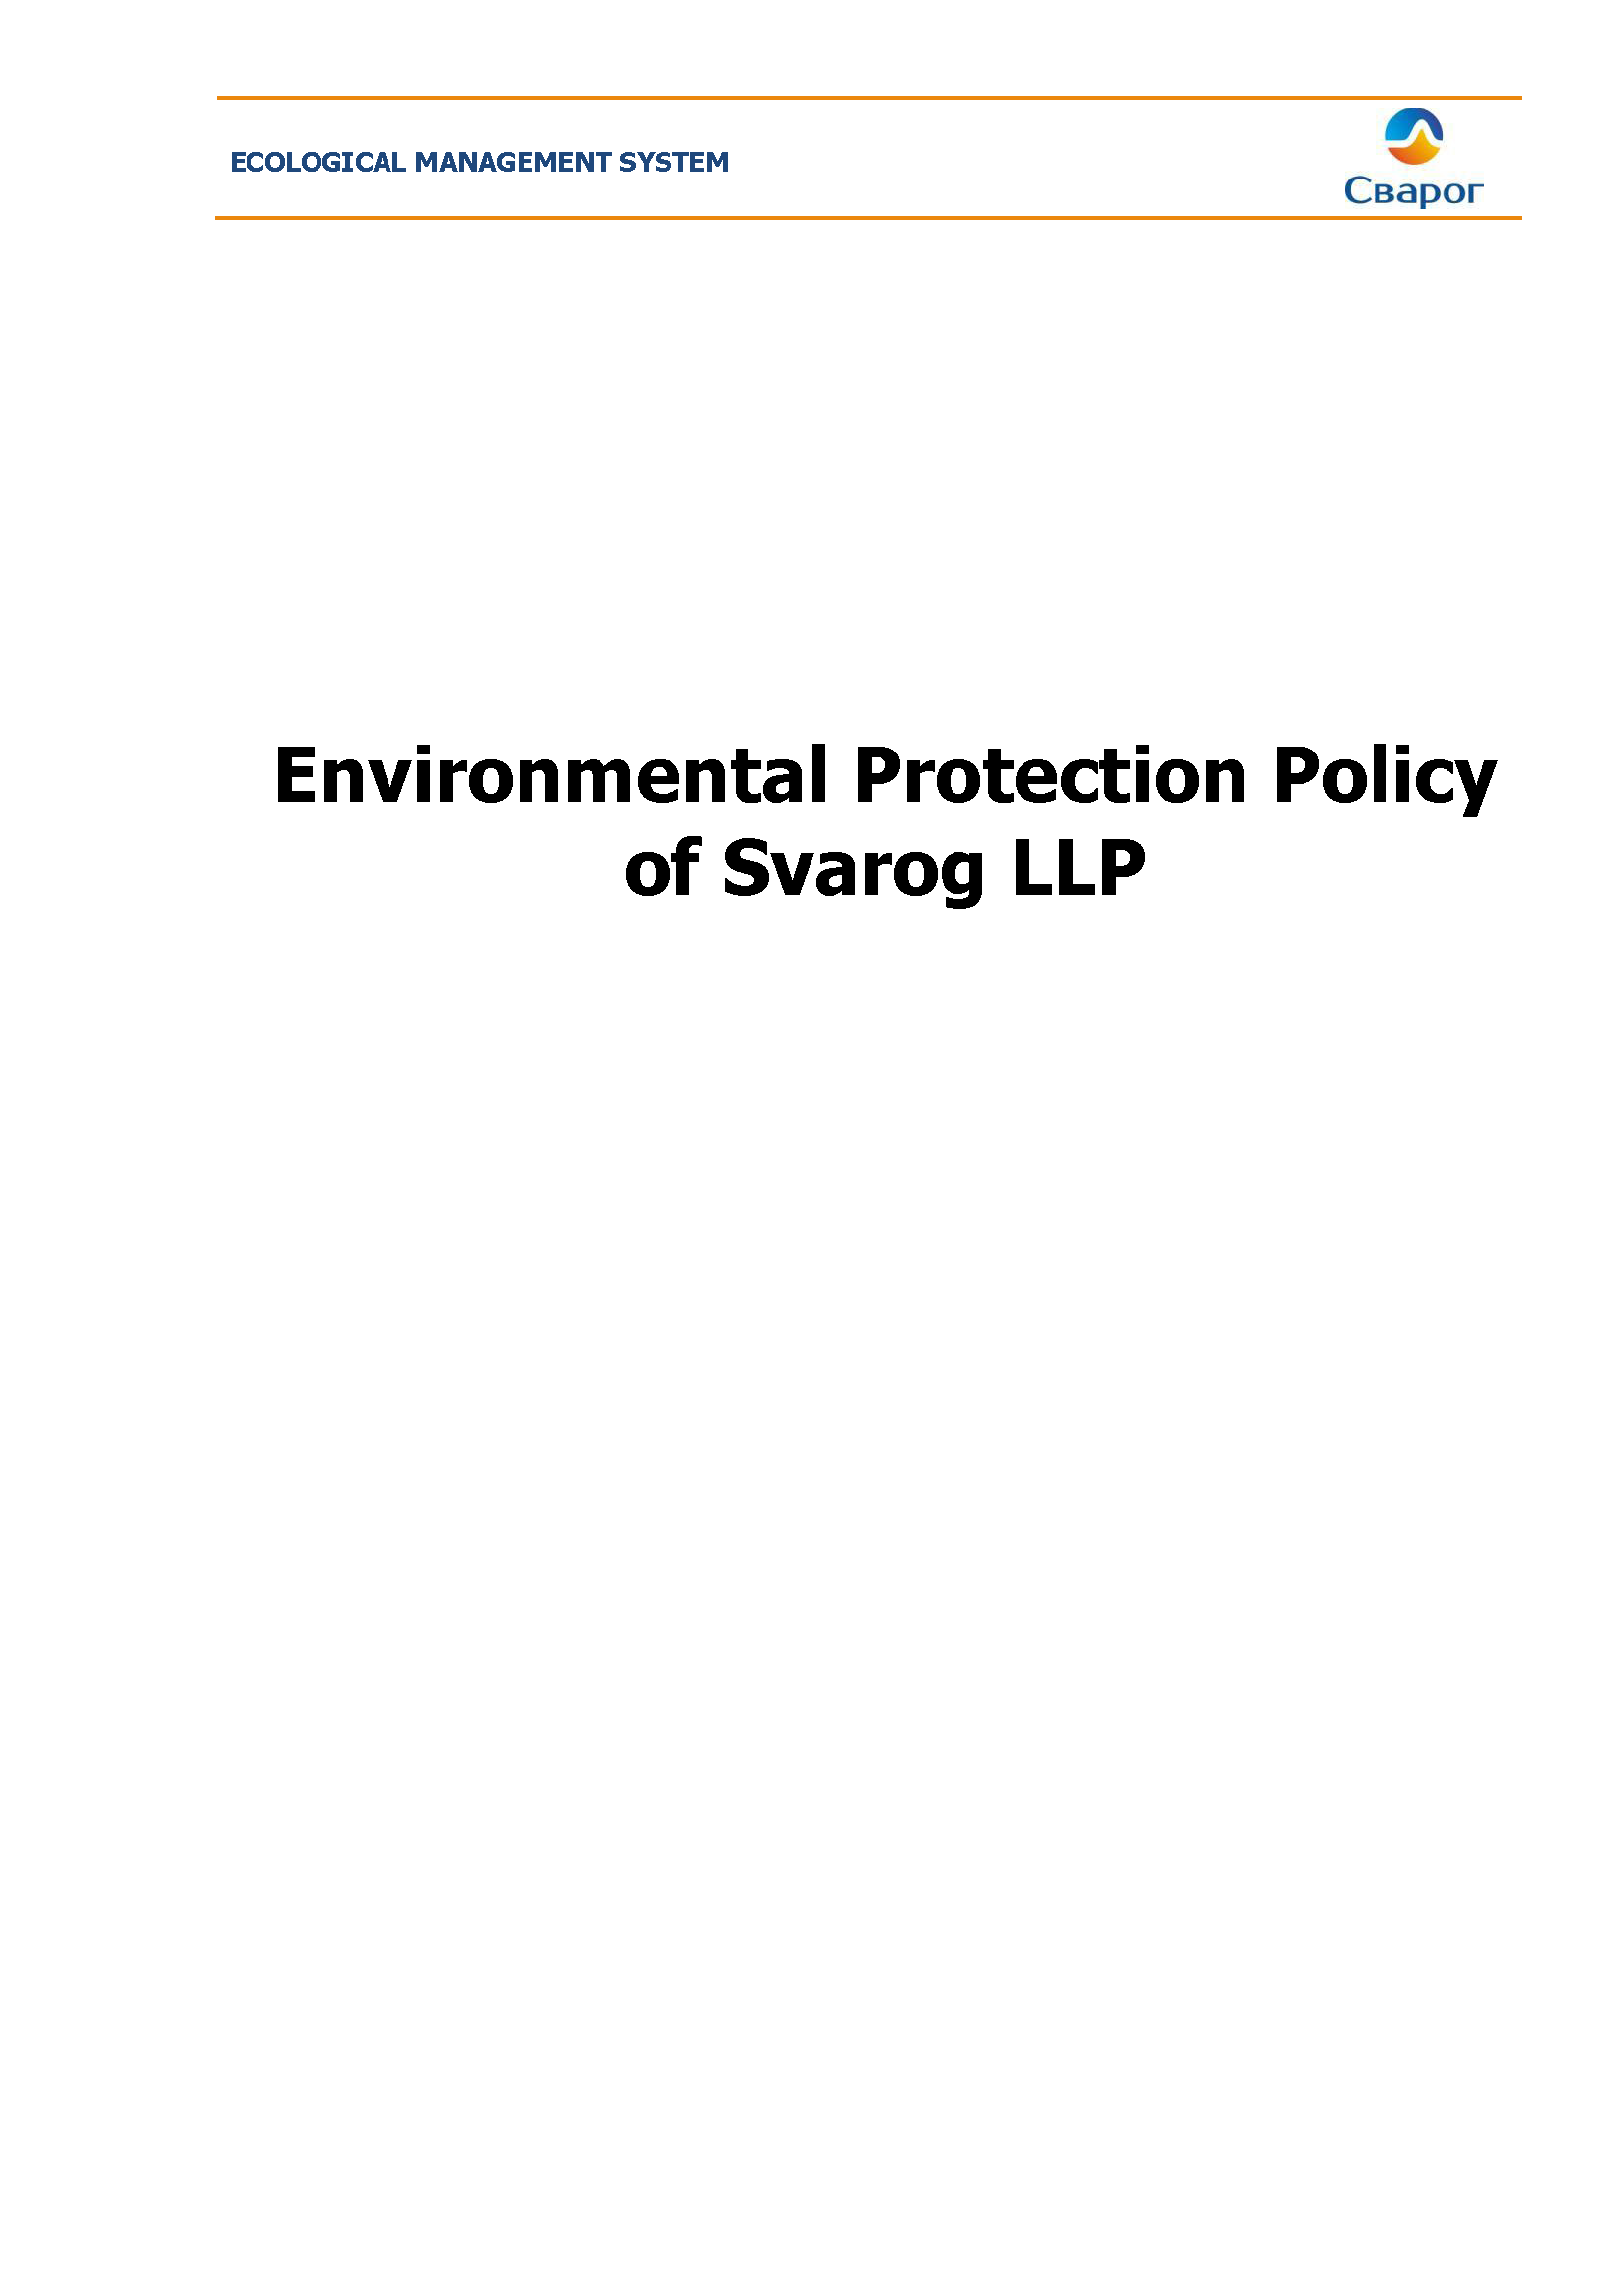 Environmental Protection Policy of Svarog LLP